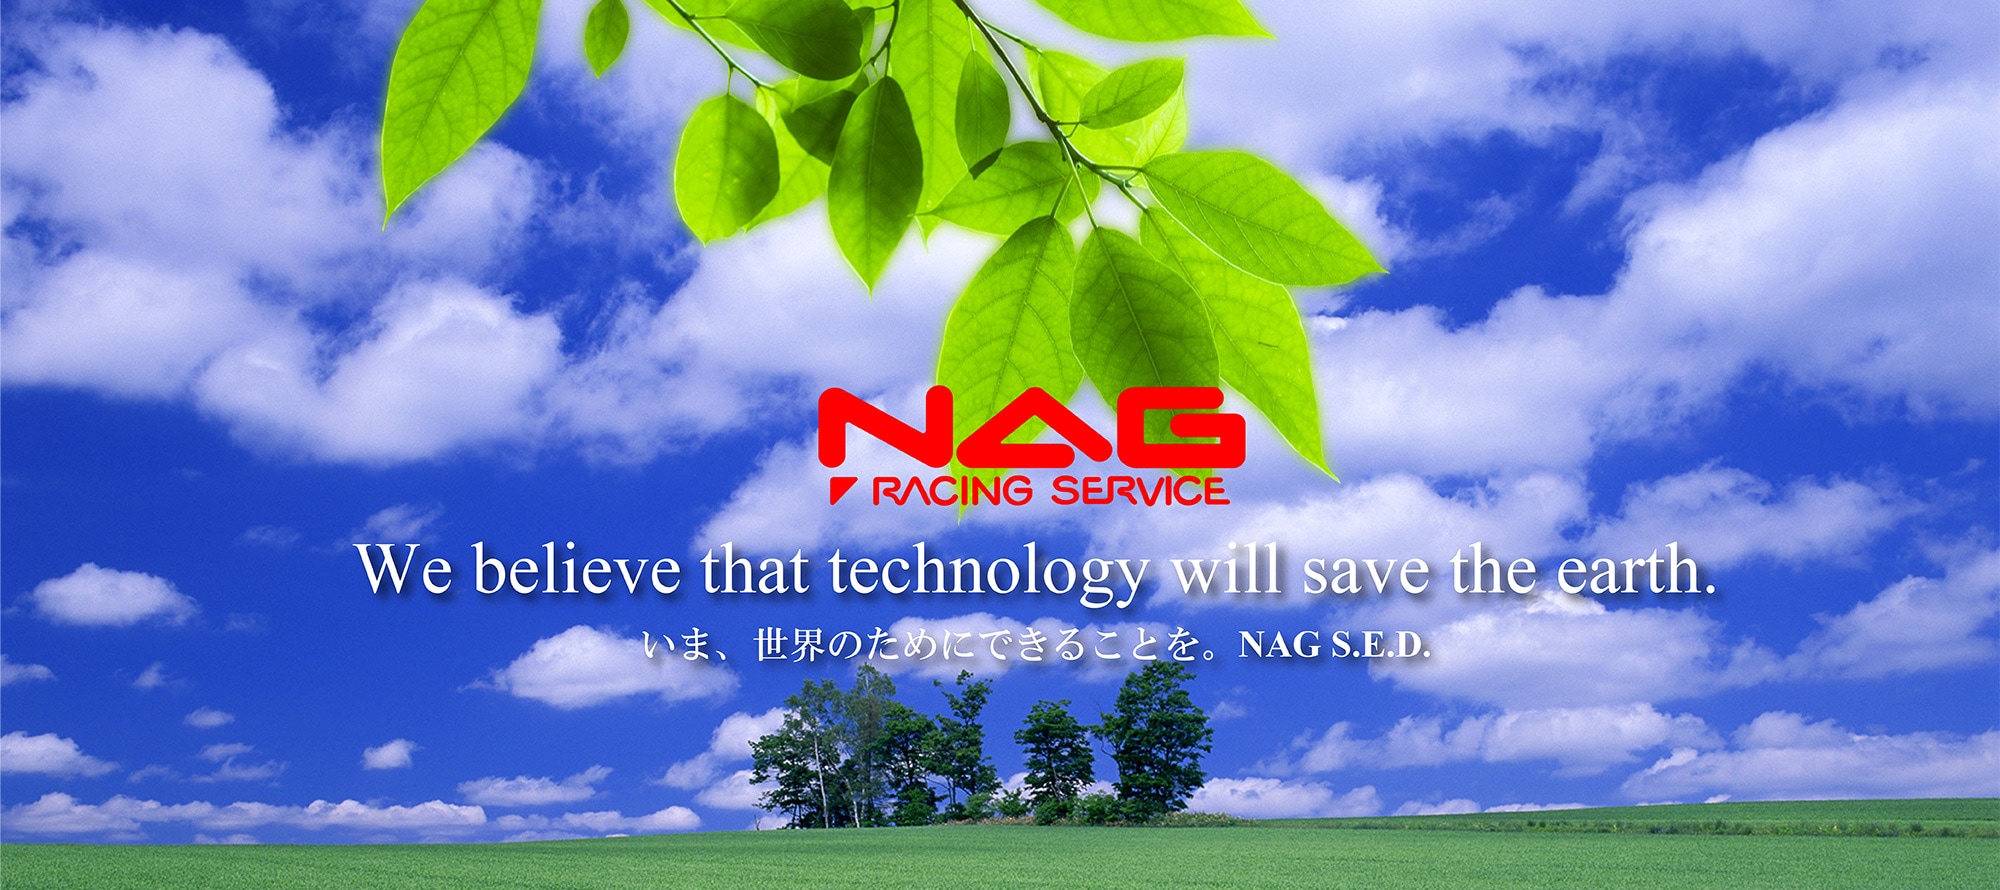 NAG S.E.D.公式サイト |